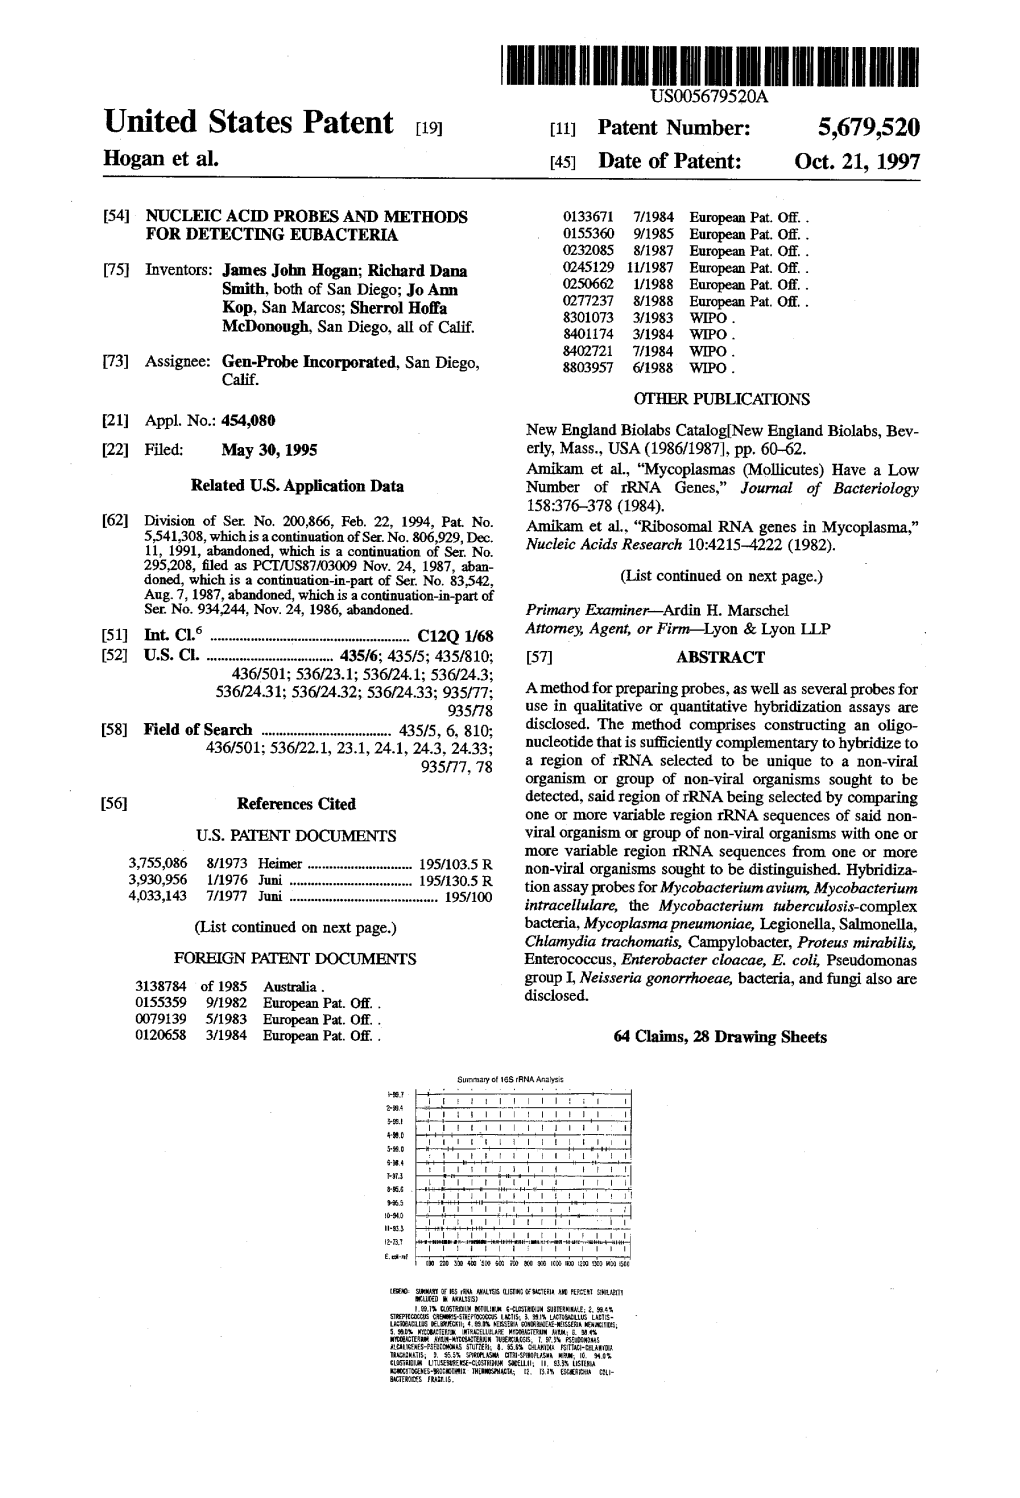 United States Patent (19) 11 Patent Number: 5,679,520 Hogan Et Al